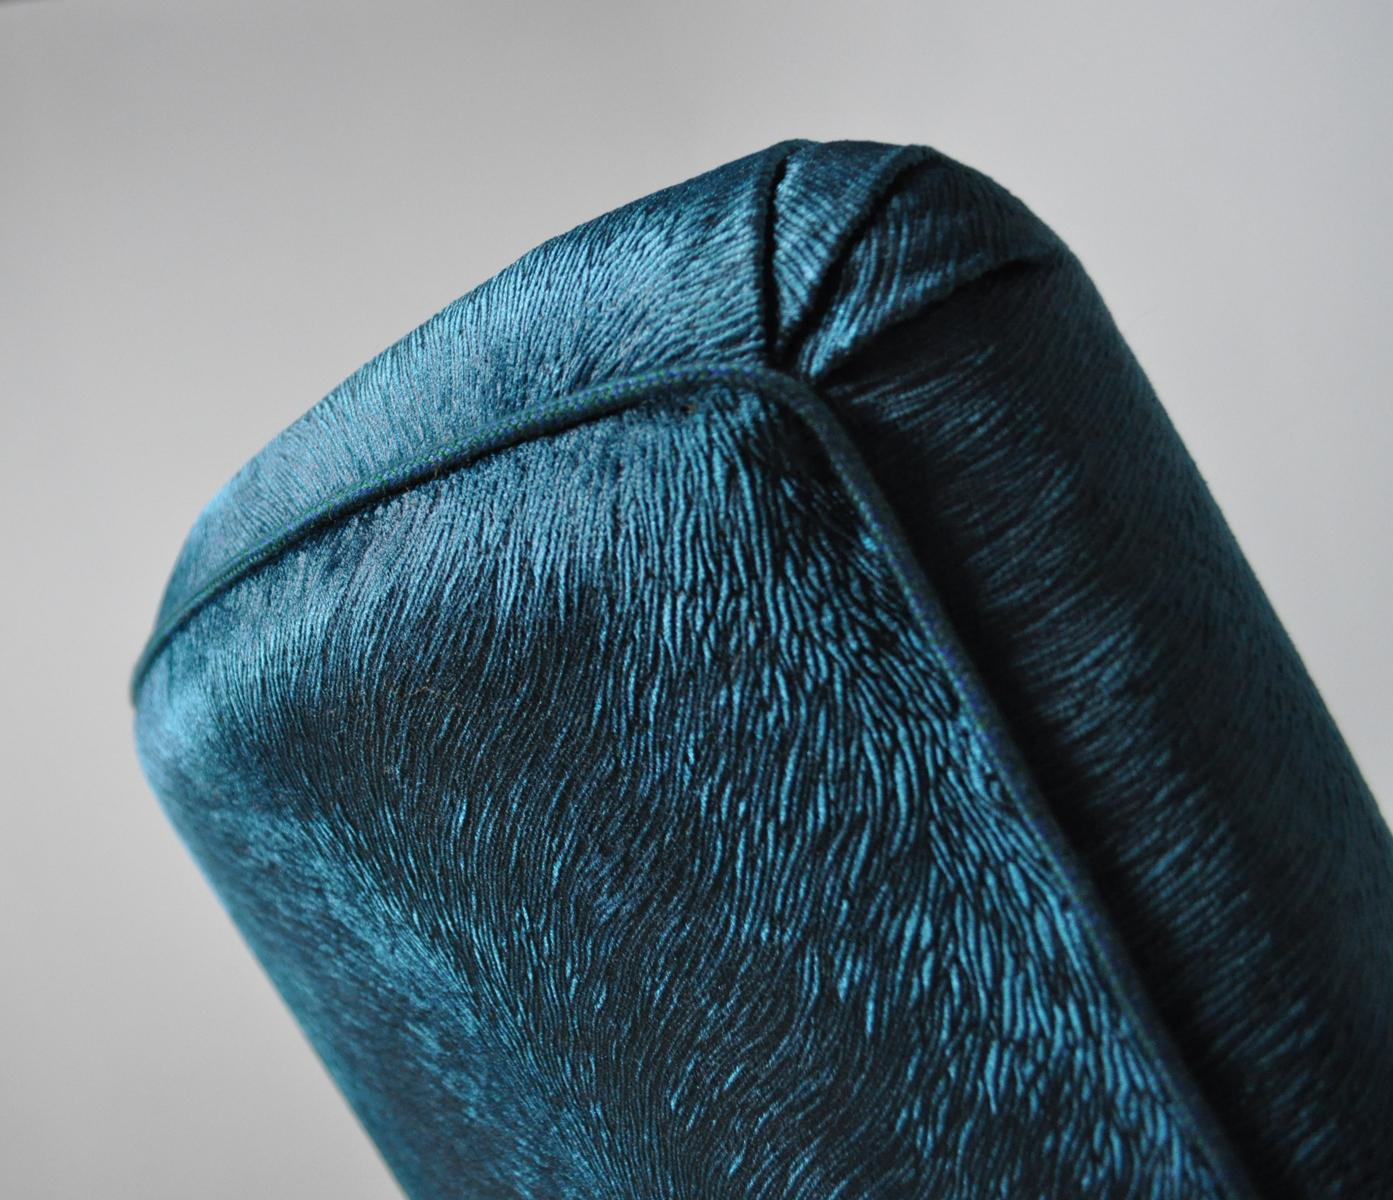 Elegant Early Midcentury Curved Sofa in Blue Velvet New Upholstery For Sale 2